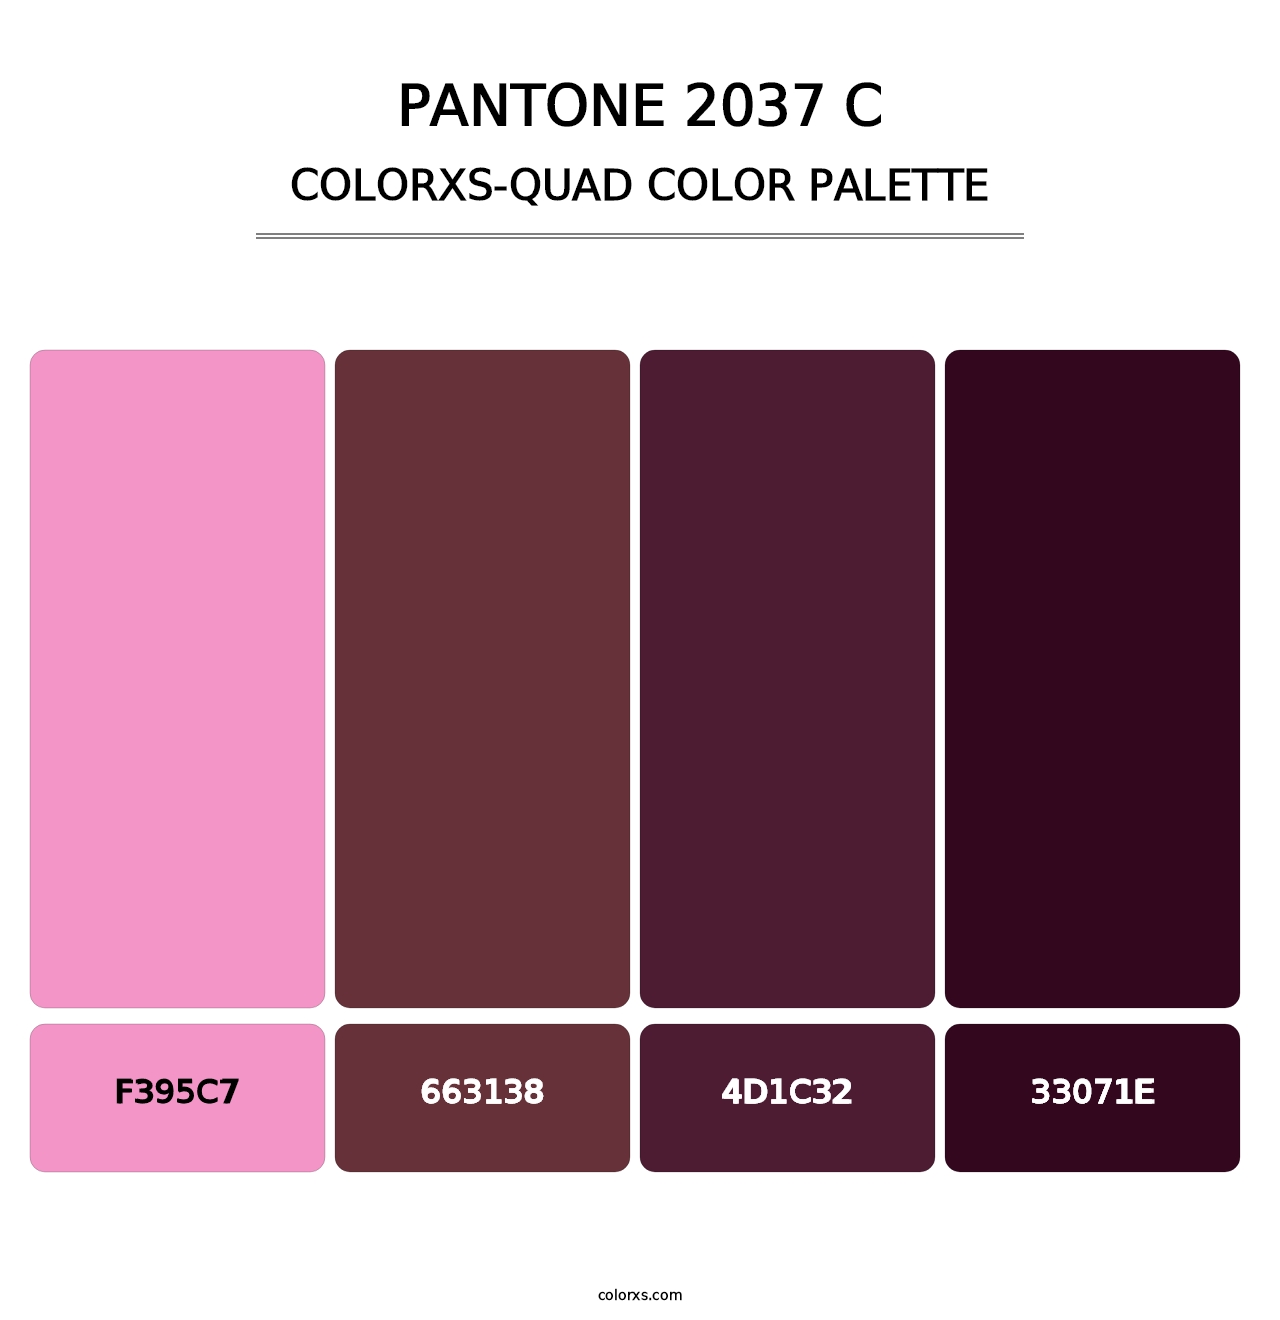 PANTONE 2037 C - Colorxs Quad Palette